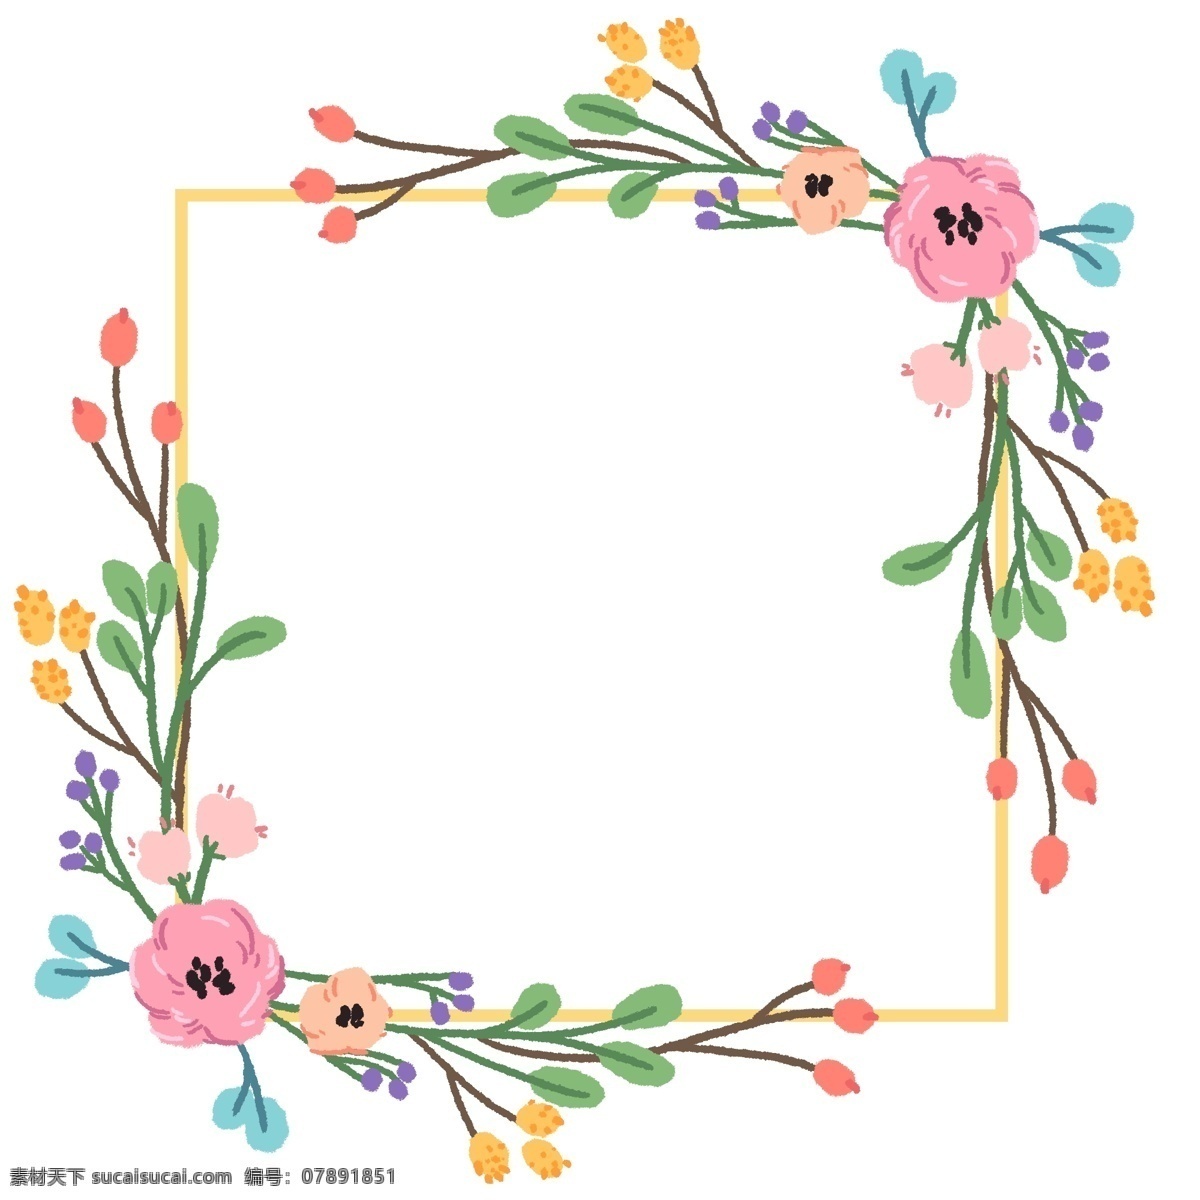 正方形 花环 边框 正方形花环 卡通边框 花环边框 鲜花边框 婚礼边框 请柬边框 粉色的花朵